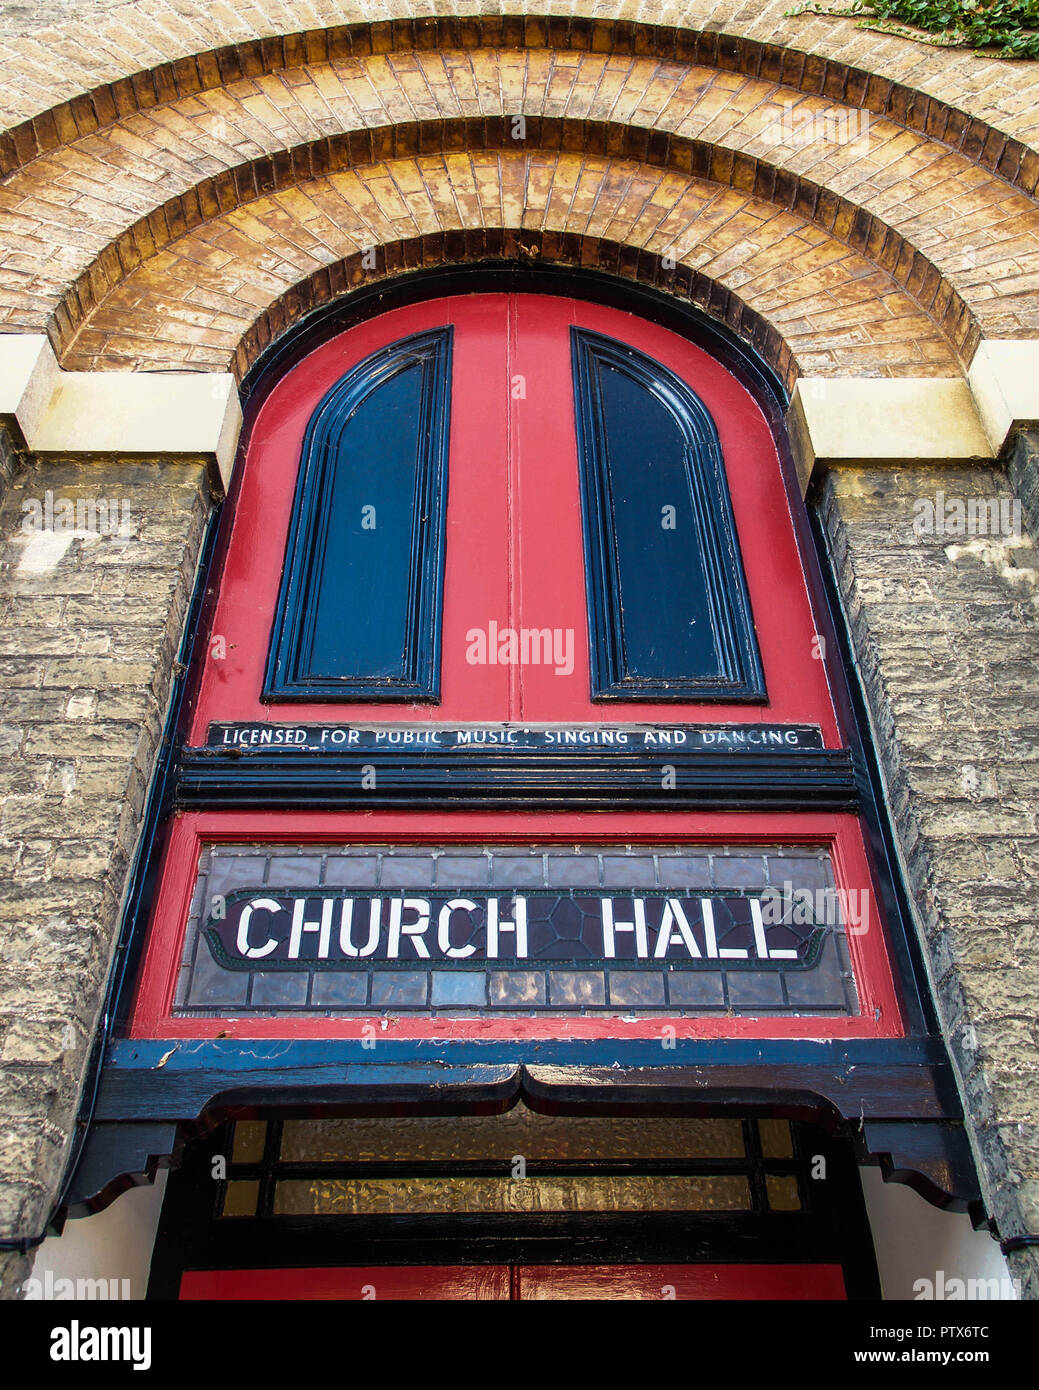 Die Tür der roten Kirchenhalle wurde für Dancing lizenziert Stockfoto